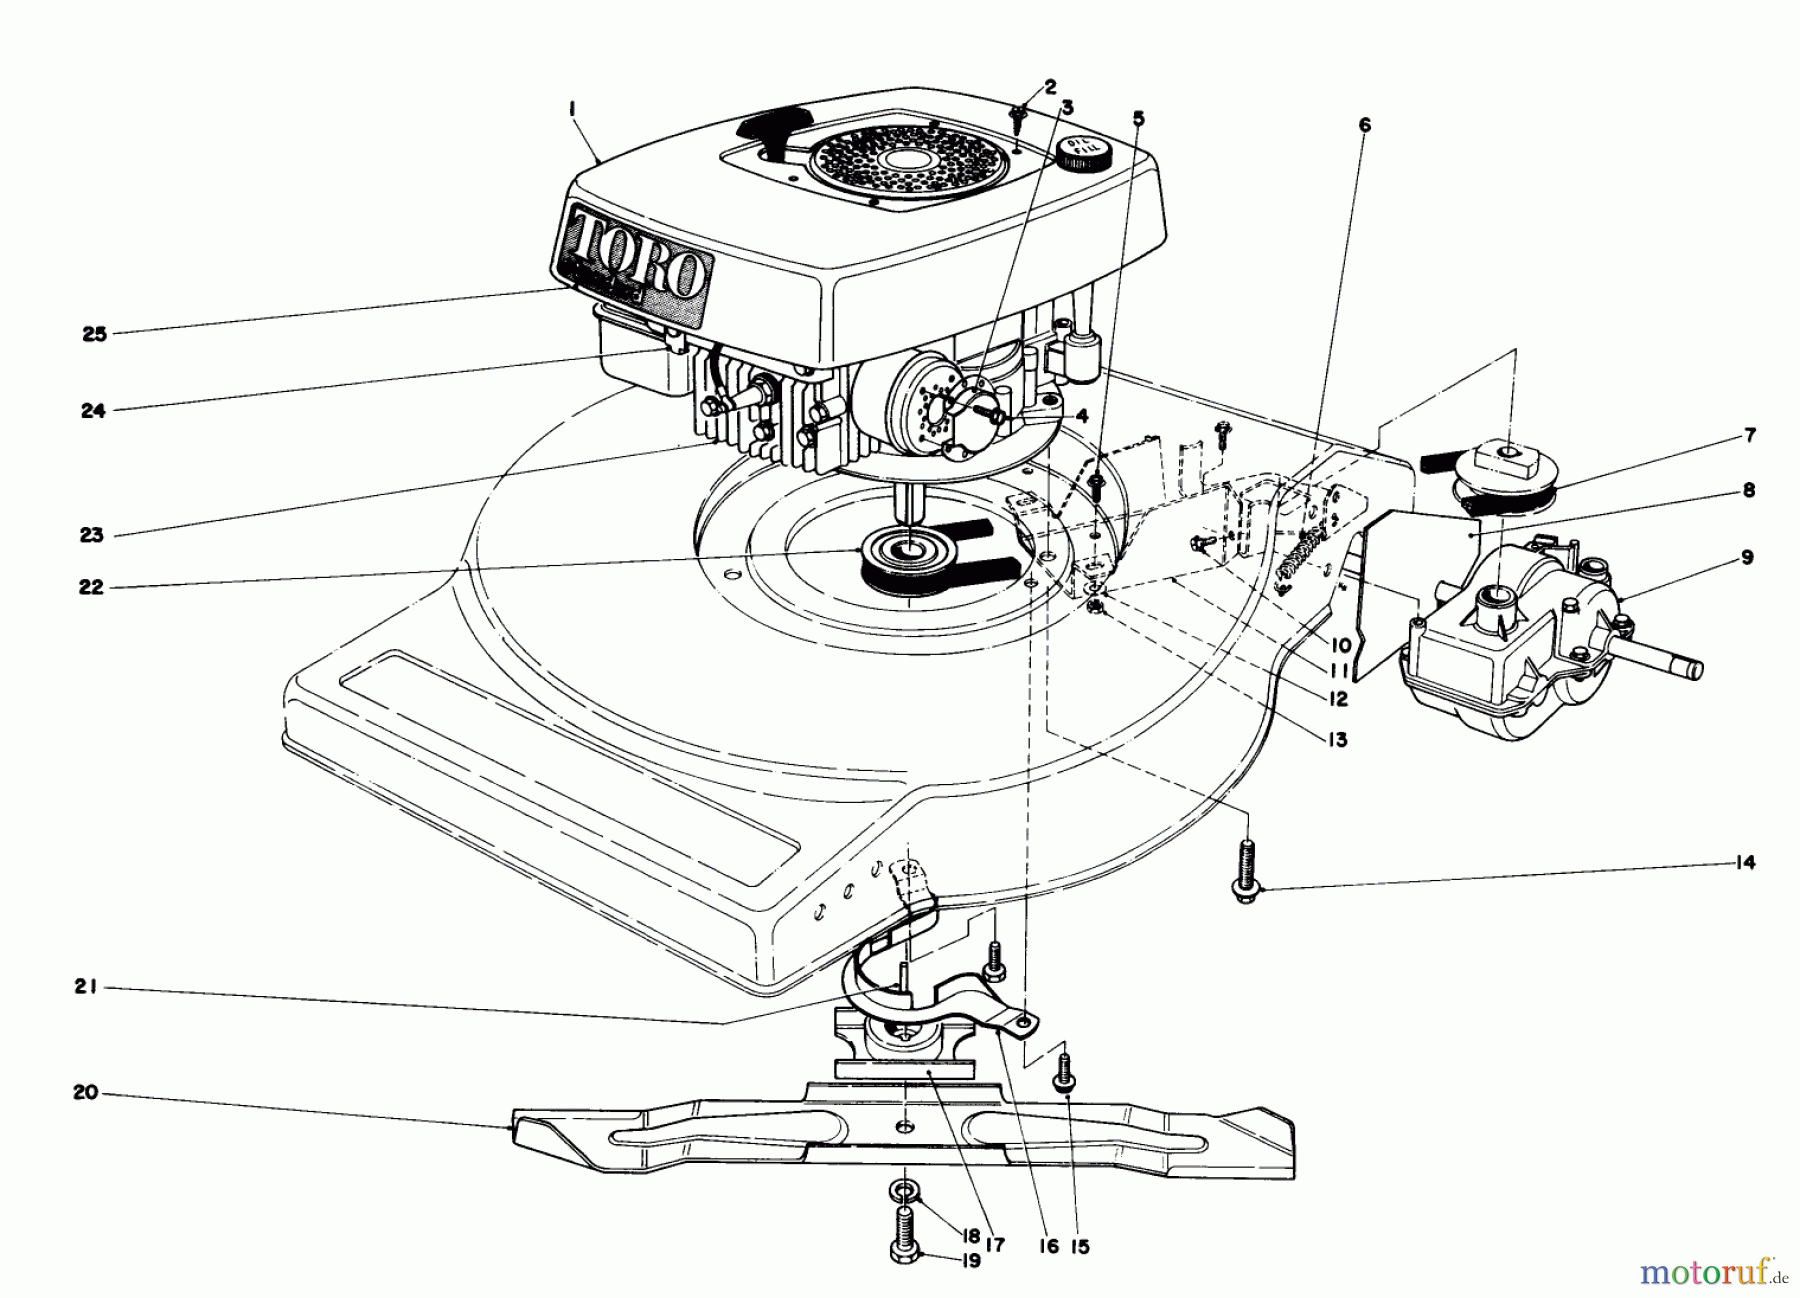  Toro Neu Mowers, Walk-Behind Seite 1 16890 - Toro Lawnmower, 1981 (1000001-1999999) ENGINE ASSEMBLY (MODEL NO. 16890)